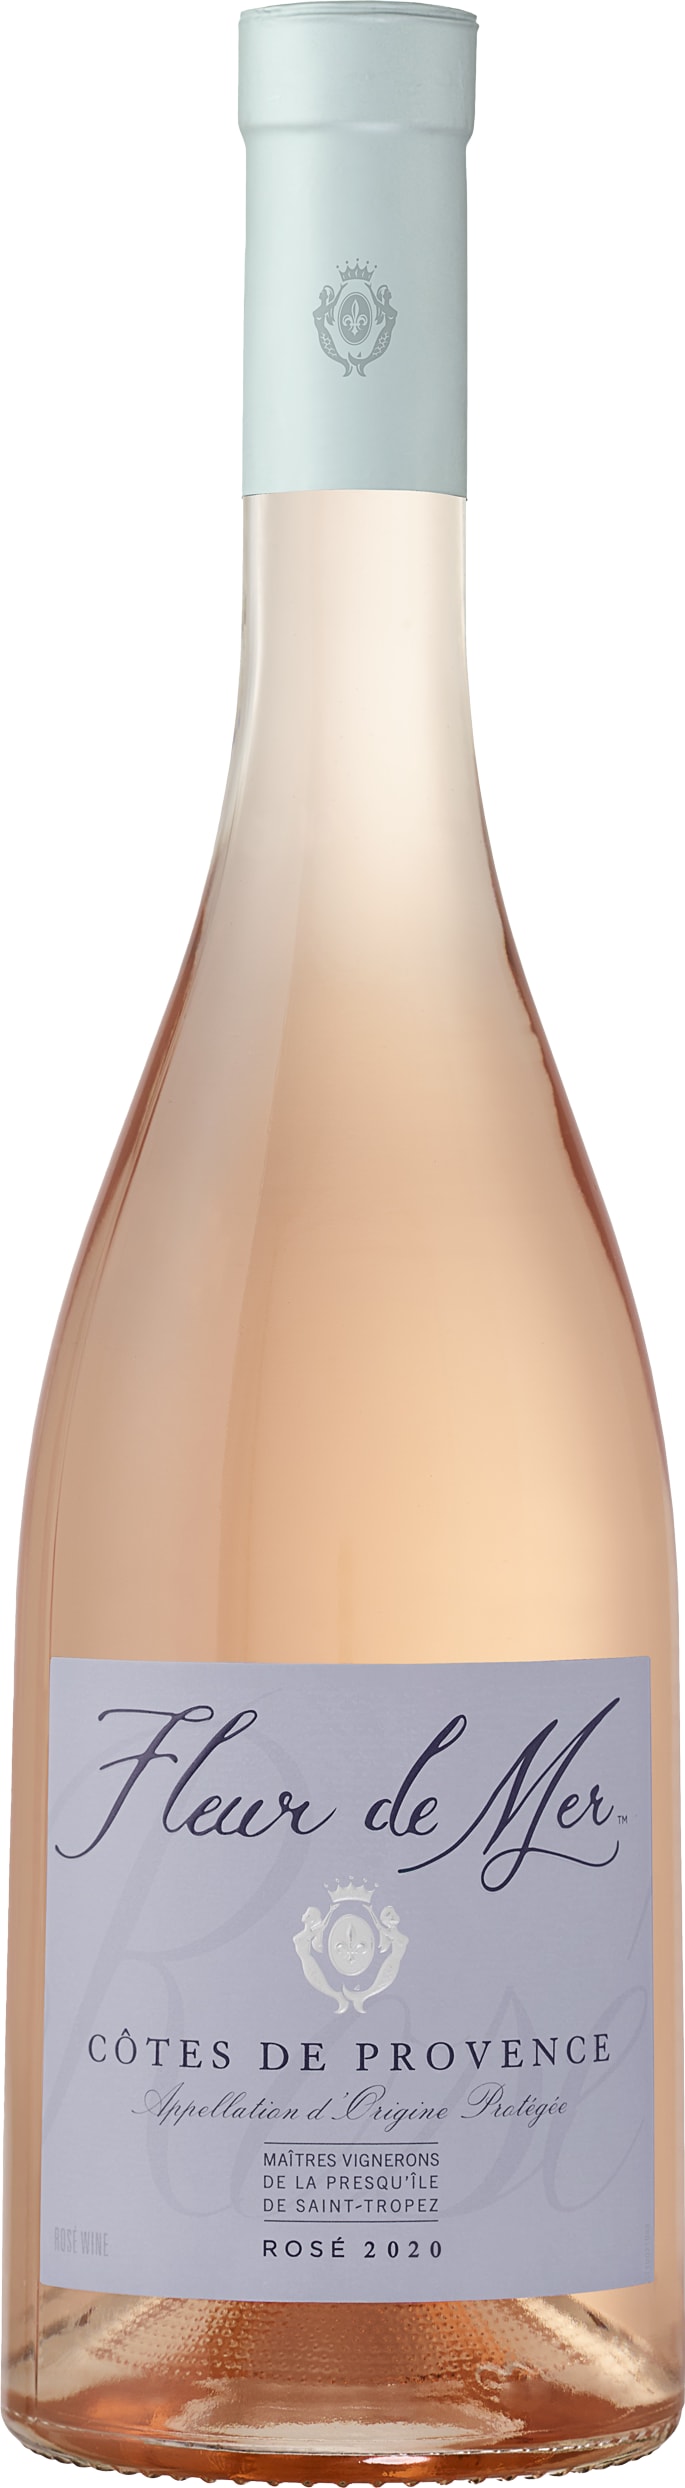 Fleur De Mer Fleur De Mer Rose 2020 75cl - Buy Fleur De Mer Wines from GREAT WINES DIRECT wine shop